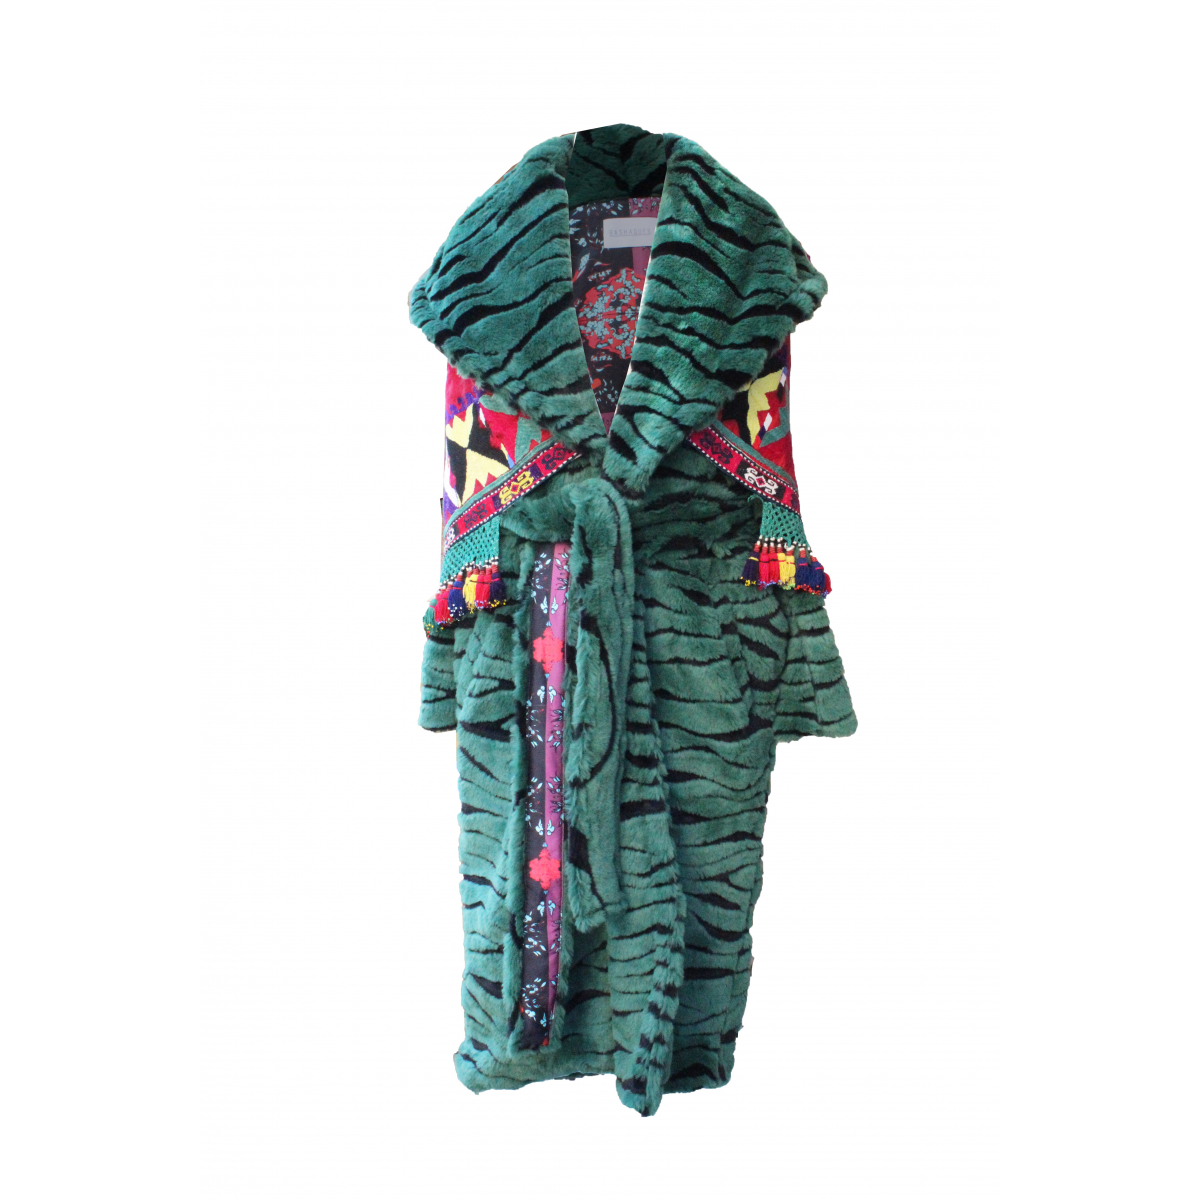 Uzbek Coat - Özbek Aksesuar Detaylı Yeşil Peluş Palto